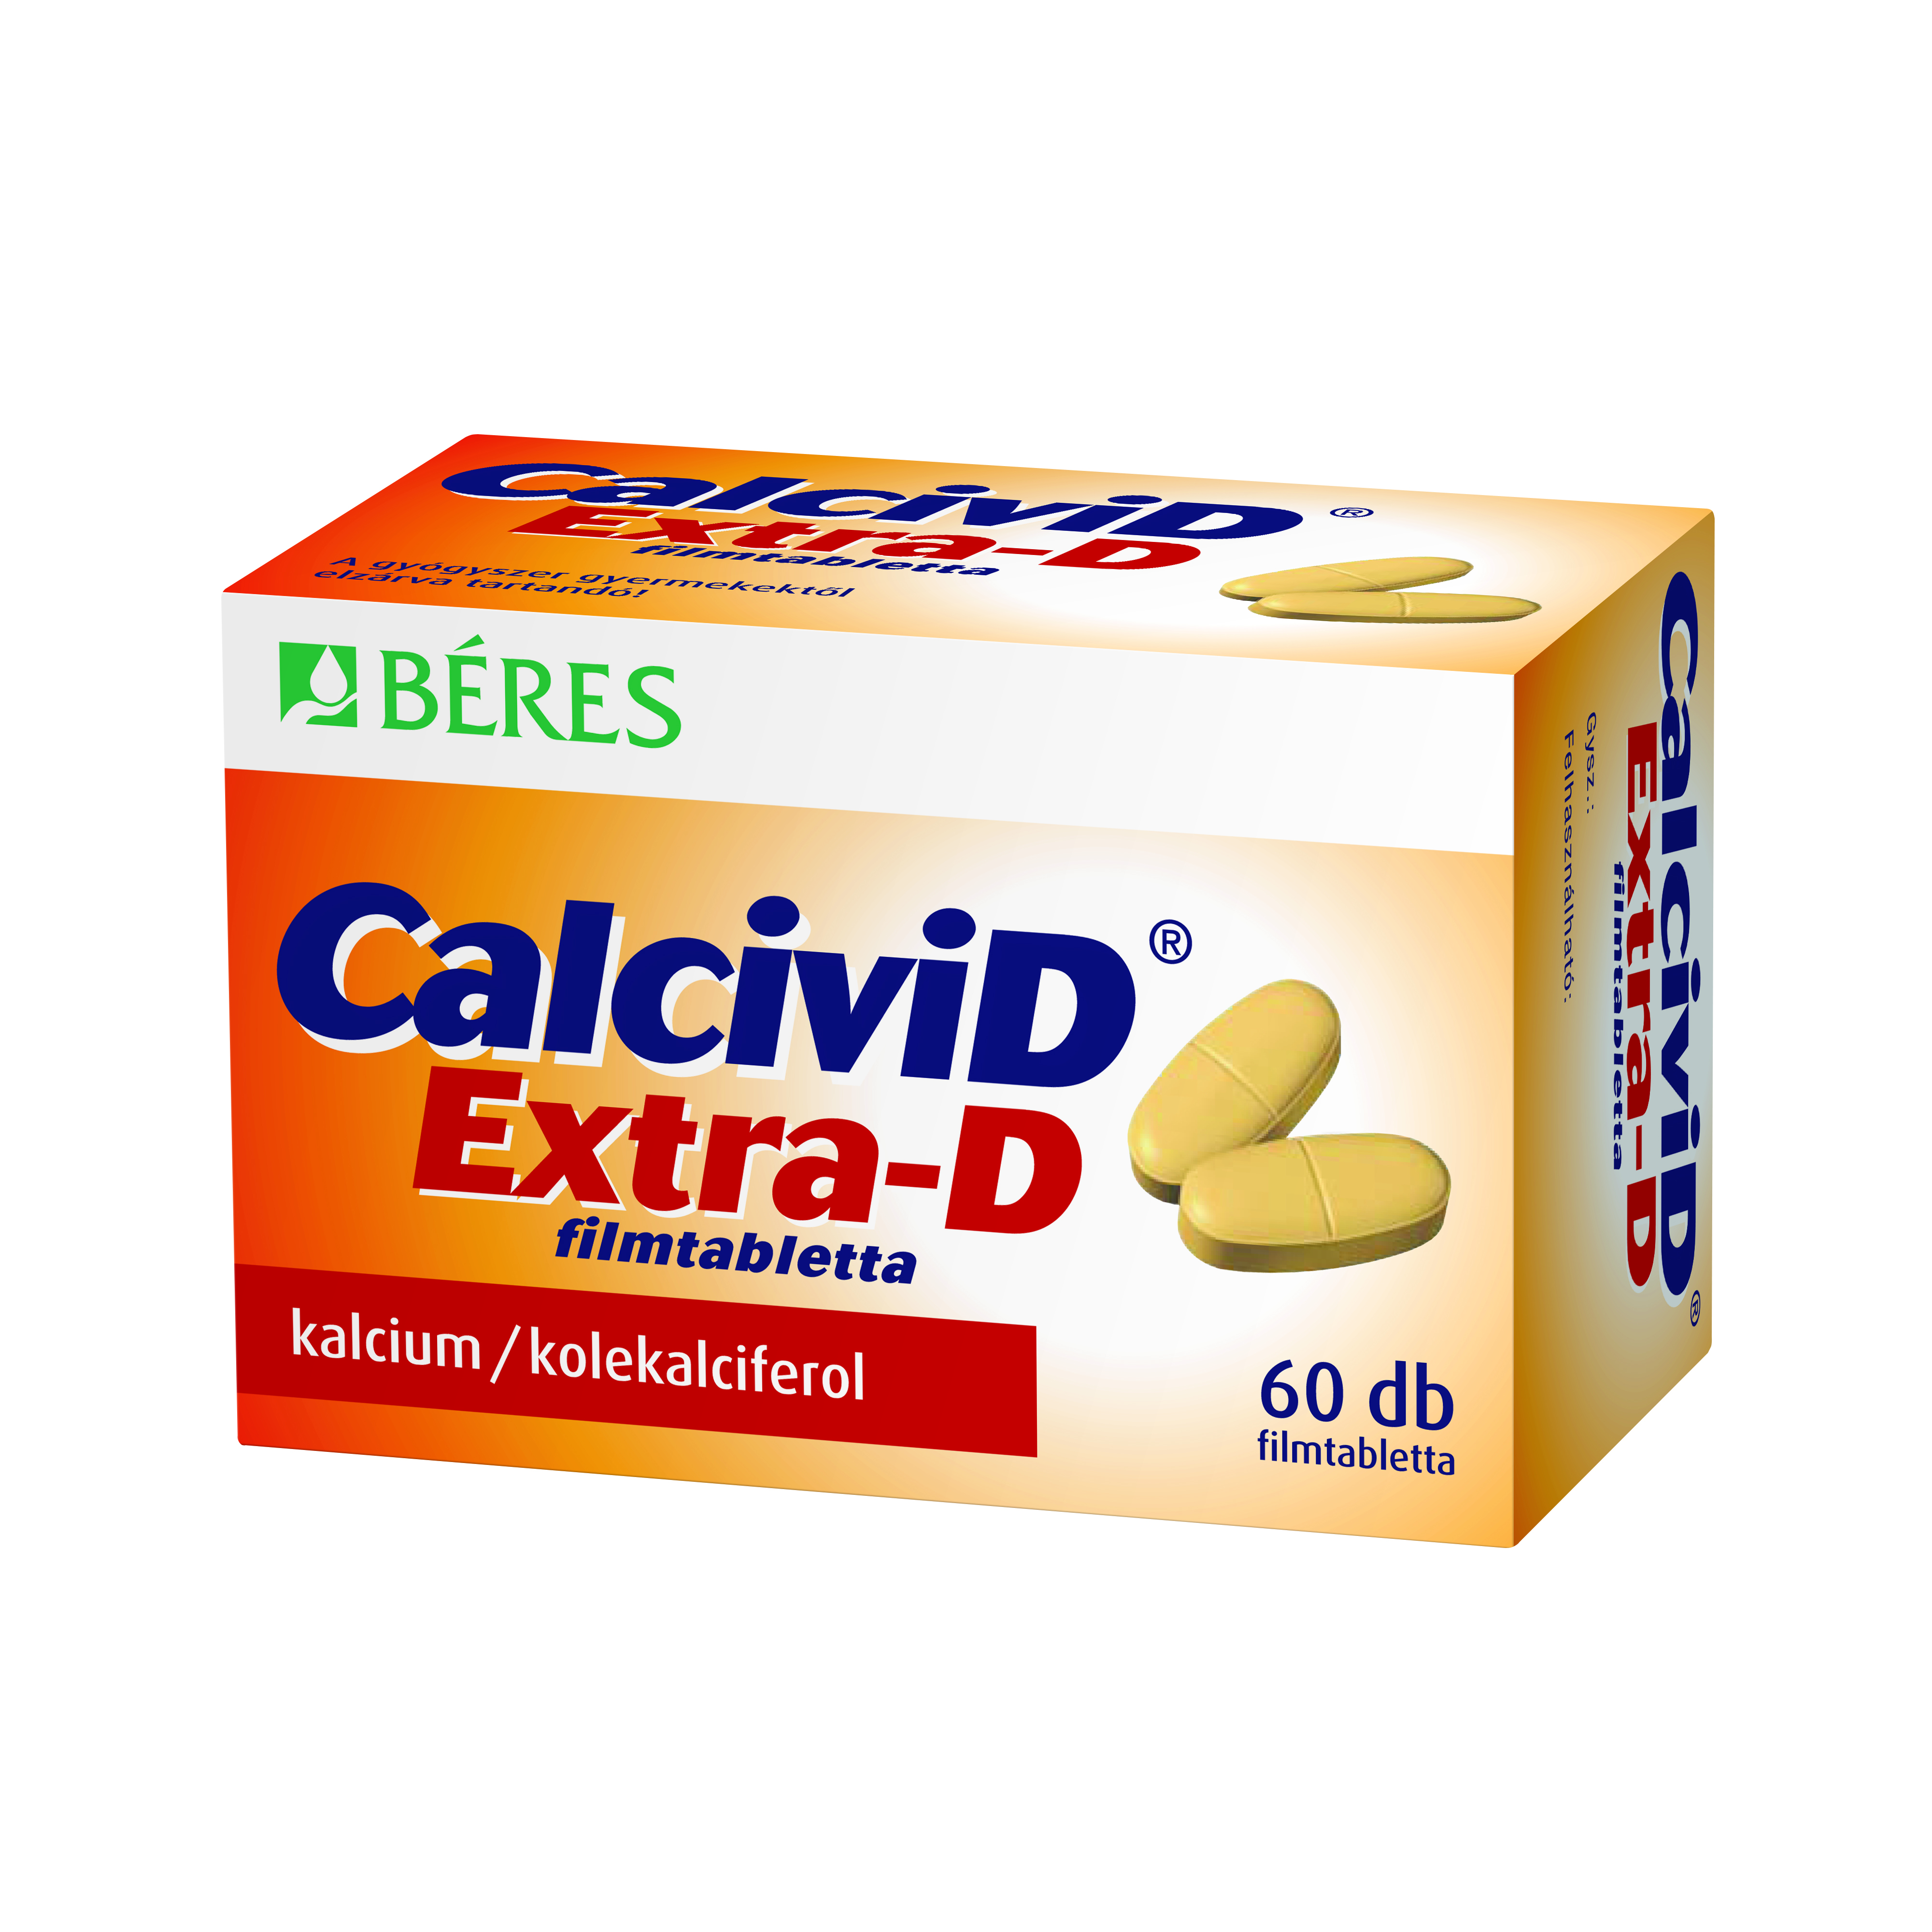 CalciviD Extra-D filmtabletta 60x